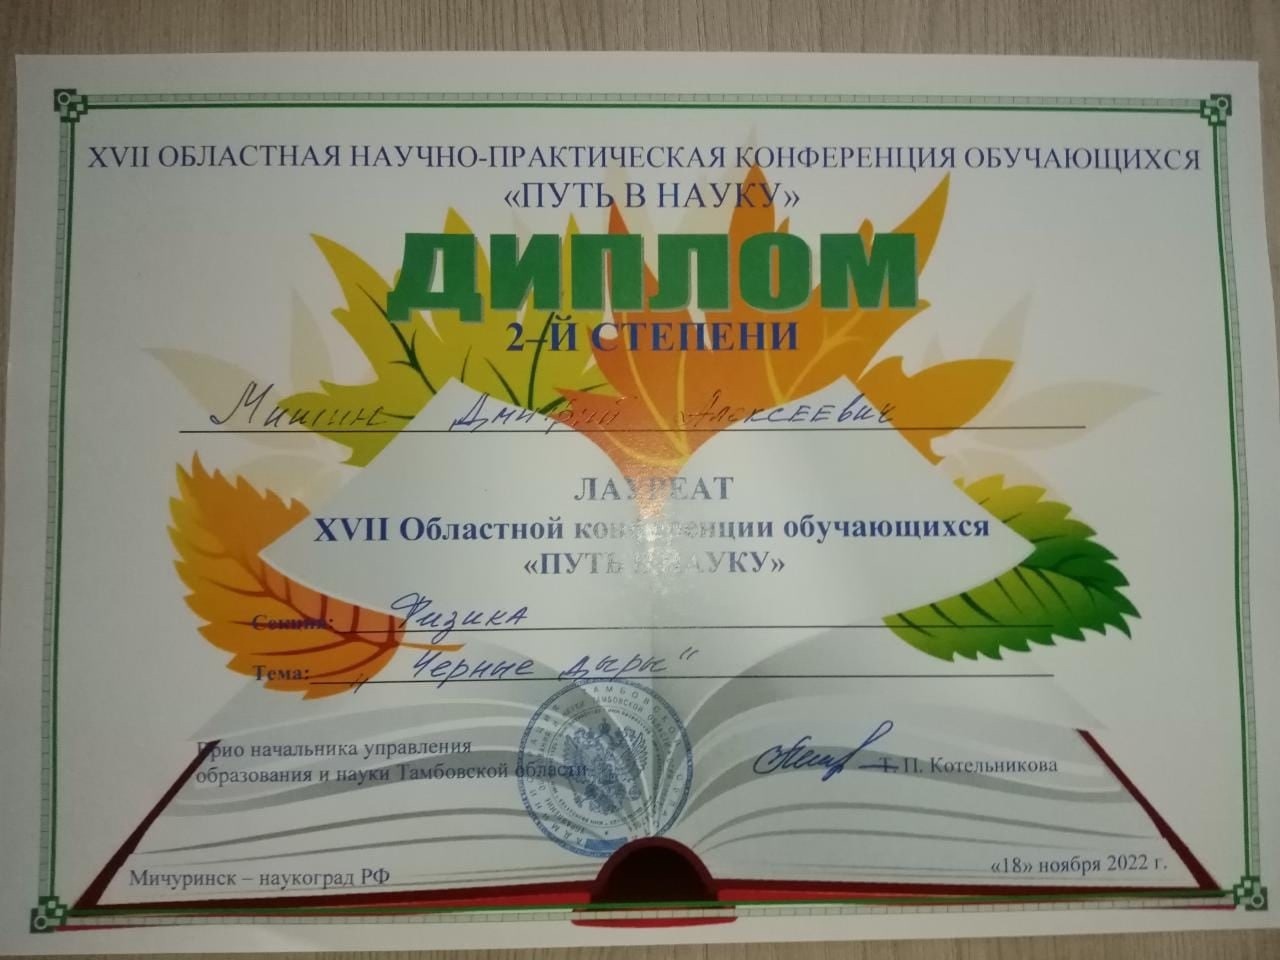 Поздравляем Мишина Дмитрия, занявшего 2 место в региональном конкурсе «Путь в науку» и руководителя Шепелева А. С.